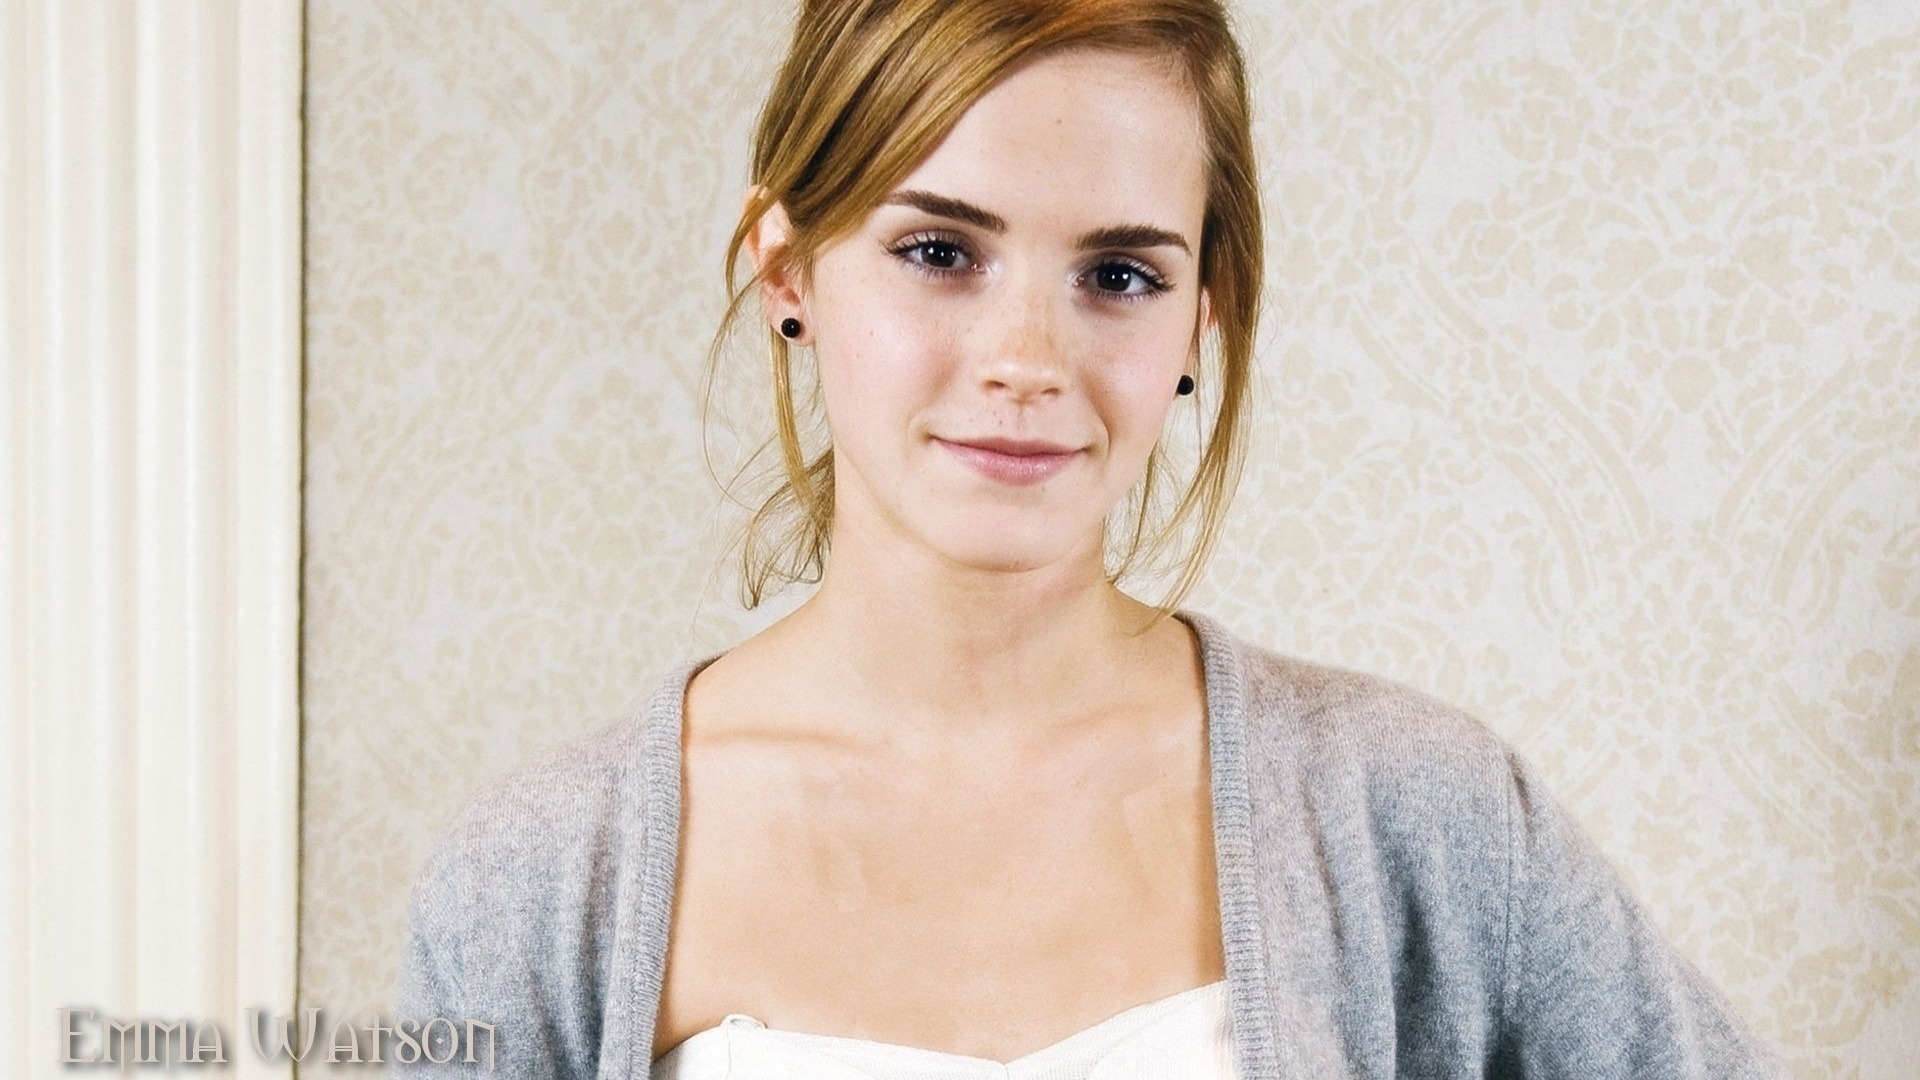 Emma Watson 艾玛·沃特森 美女壁纸33 - 1920x1080